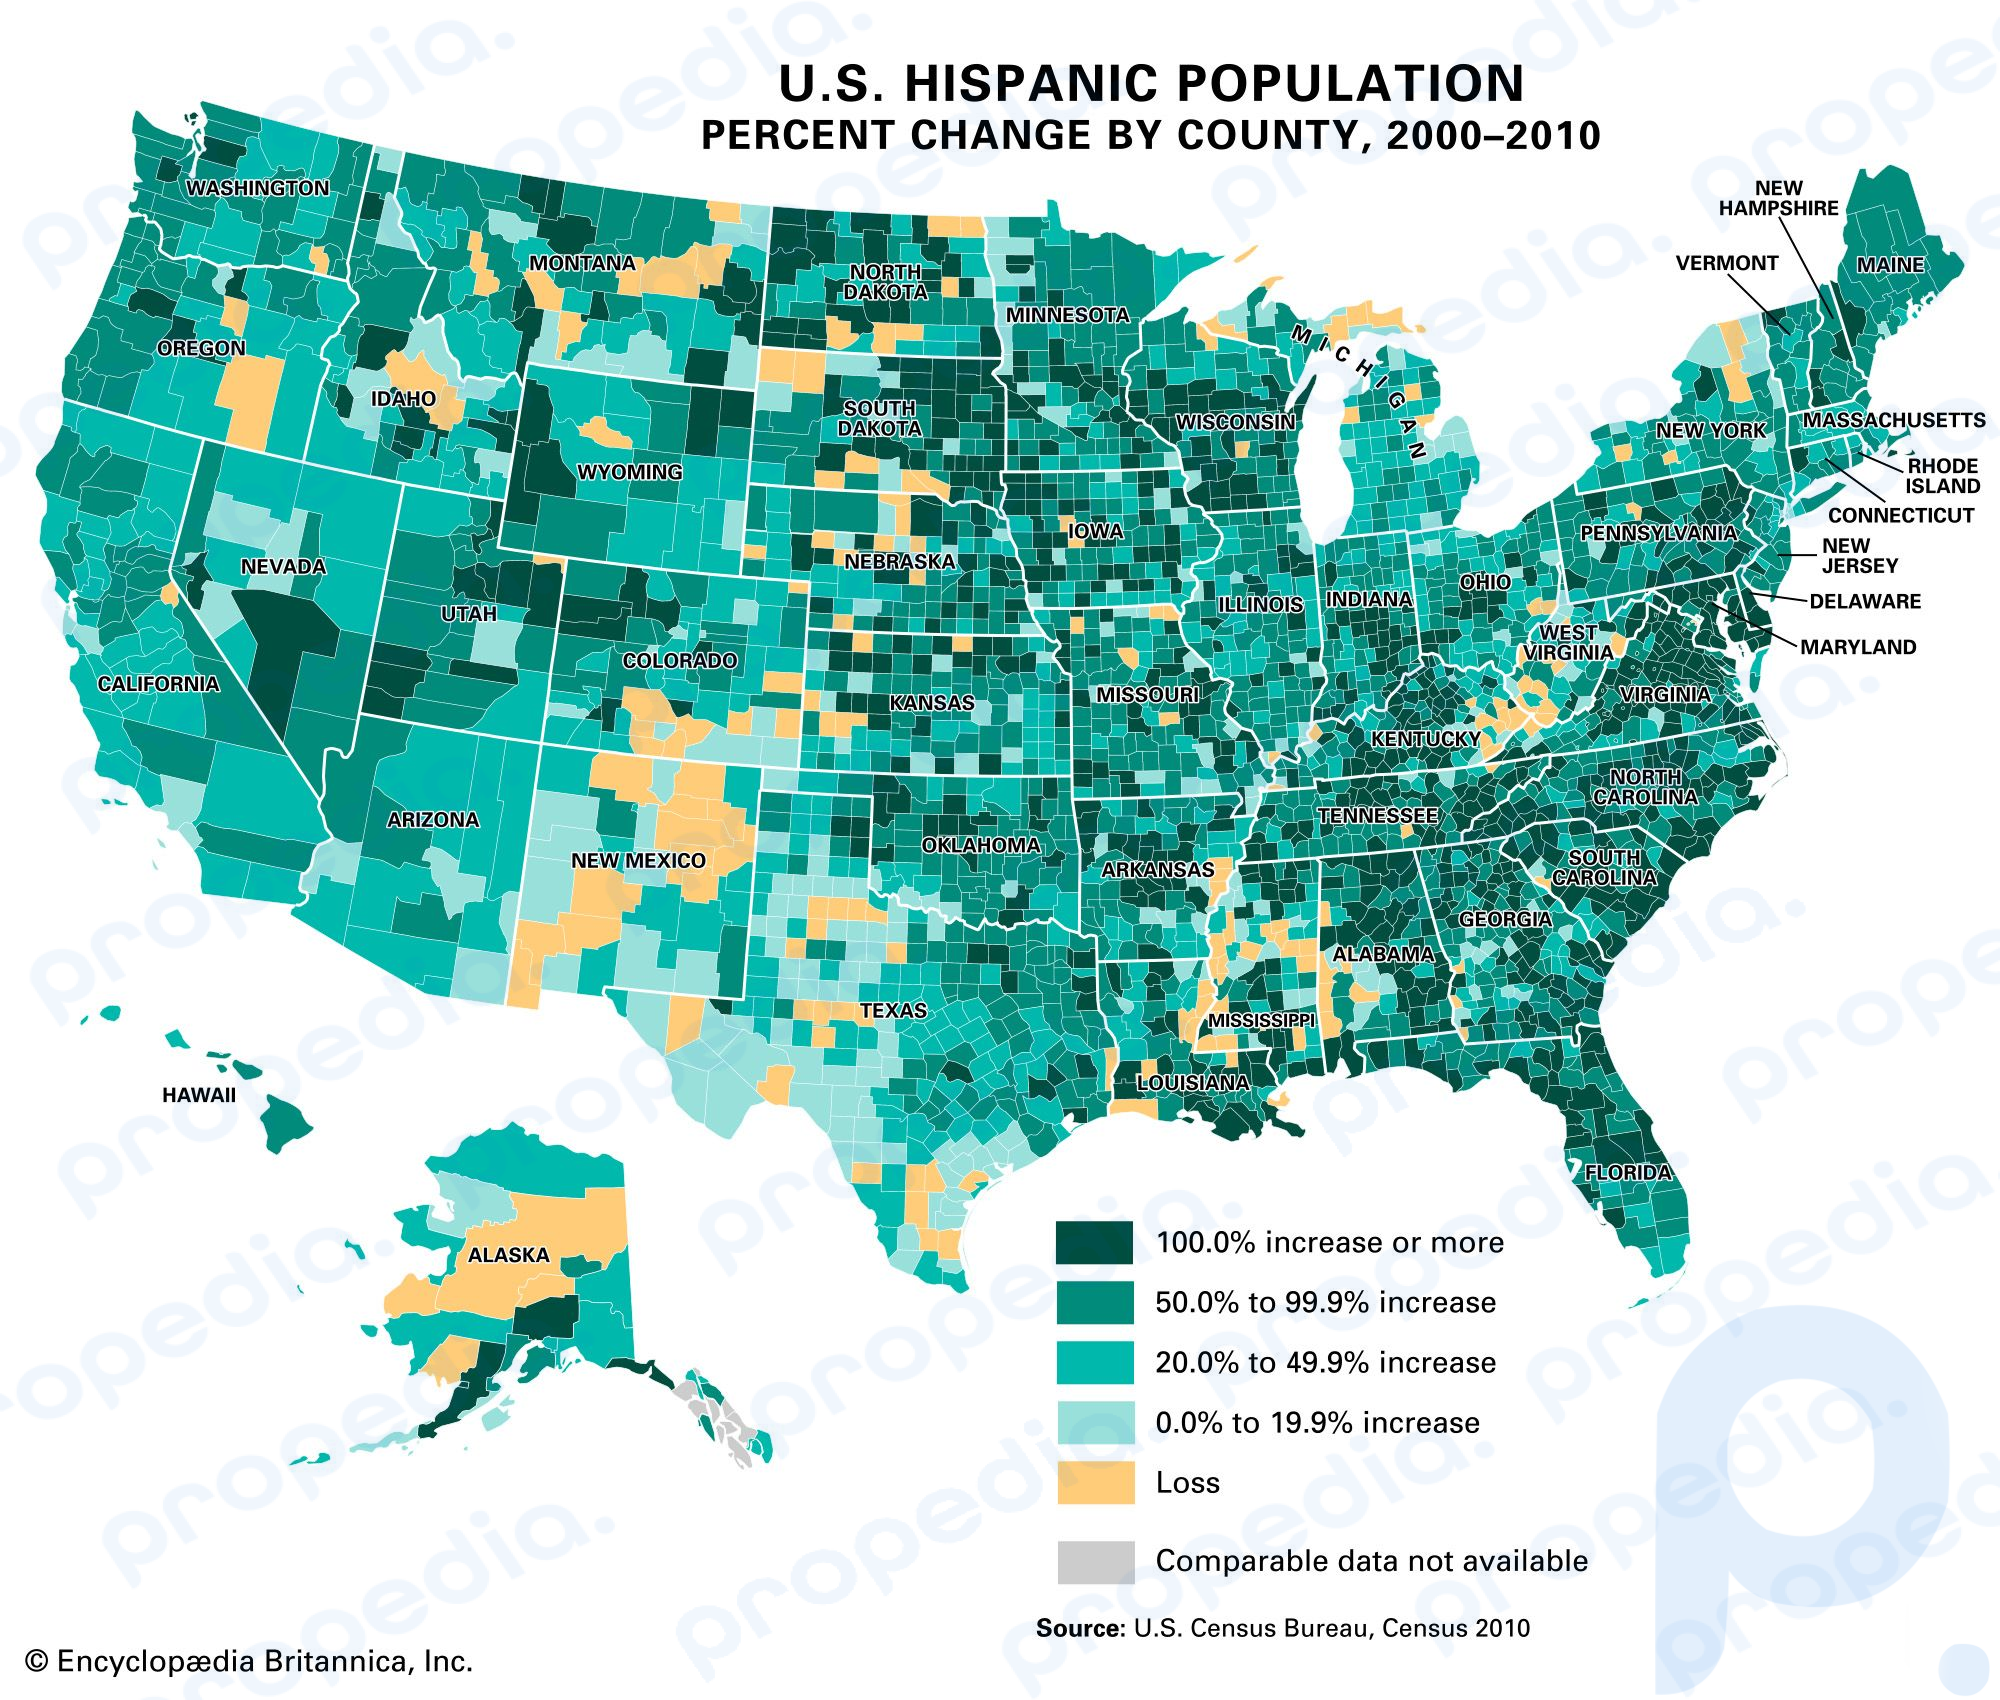 米国の郡別ヒスパニック系人口パーセントの変化、2000 ～ 2010 年